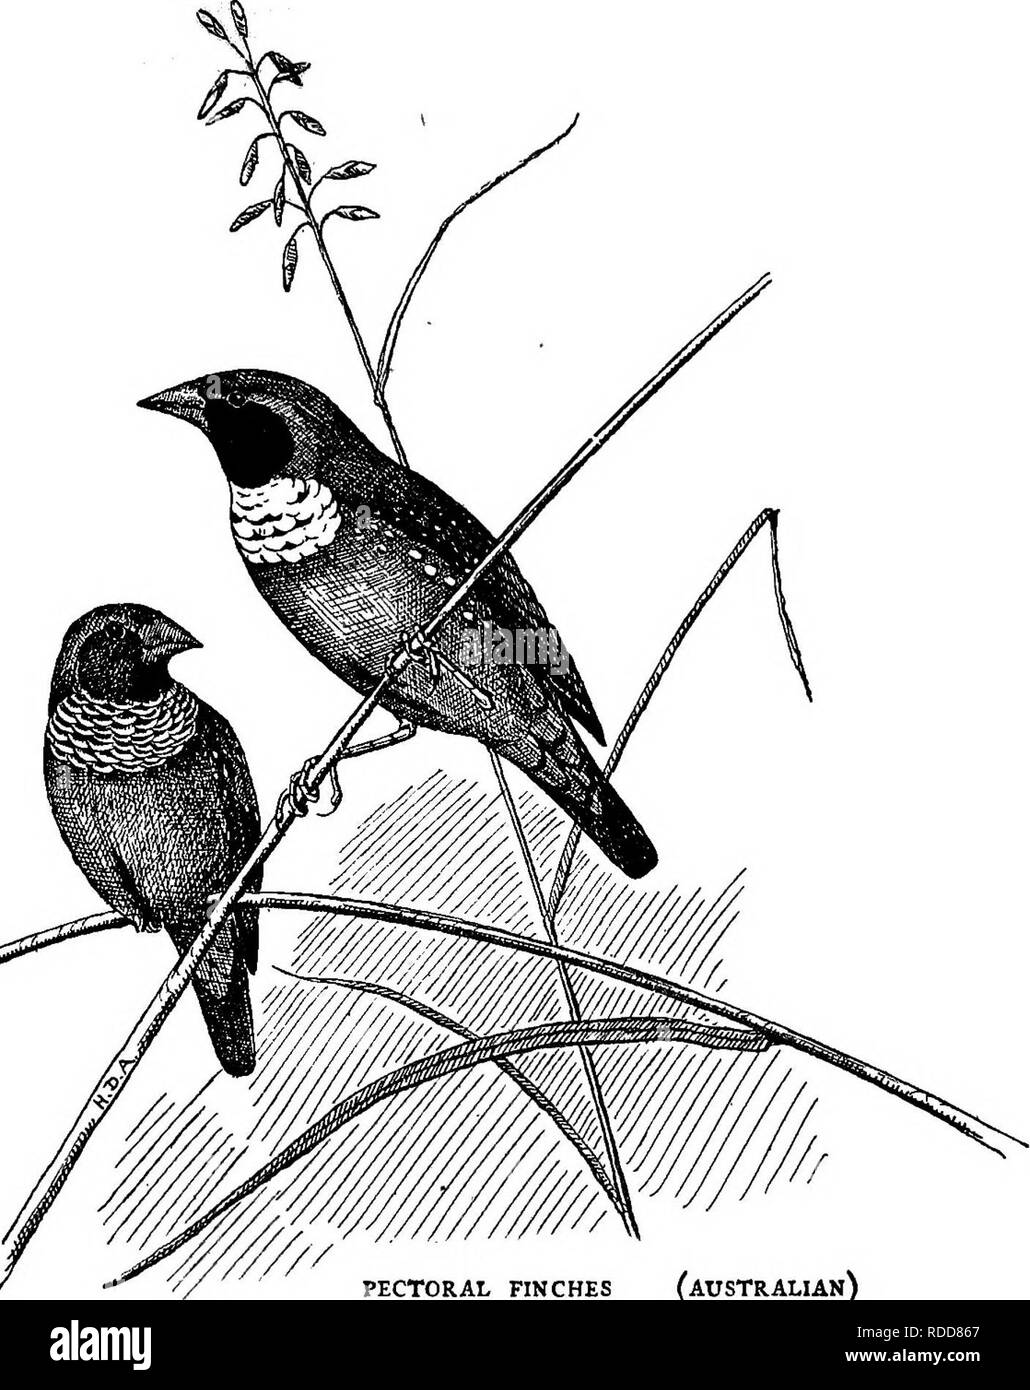 Pájaro residente Imágenes de stock en blanco y negro - Alamy